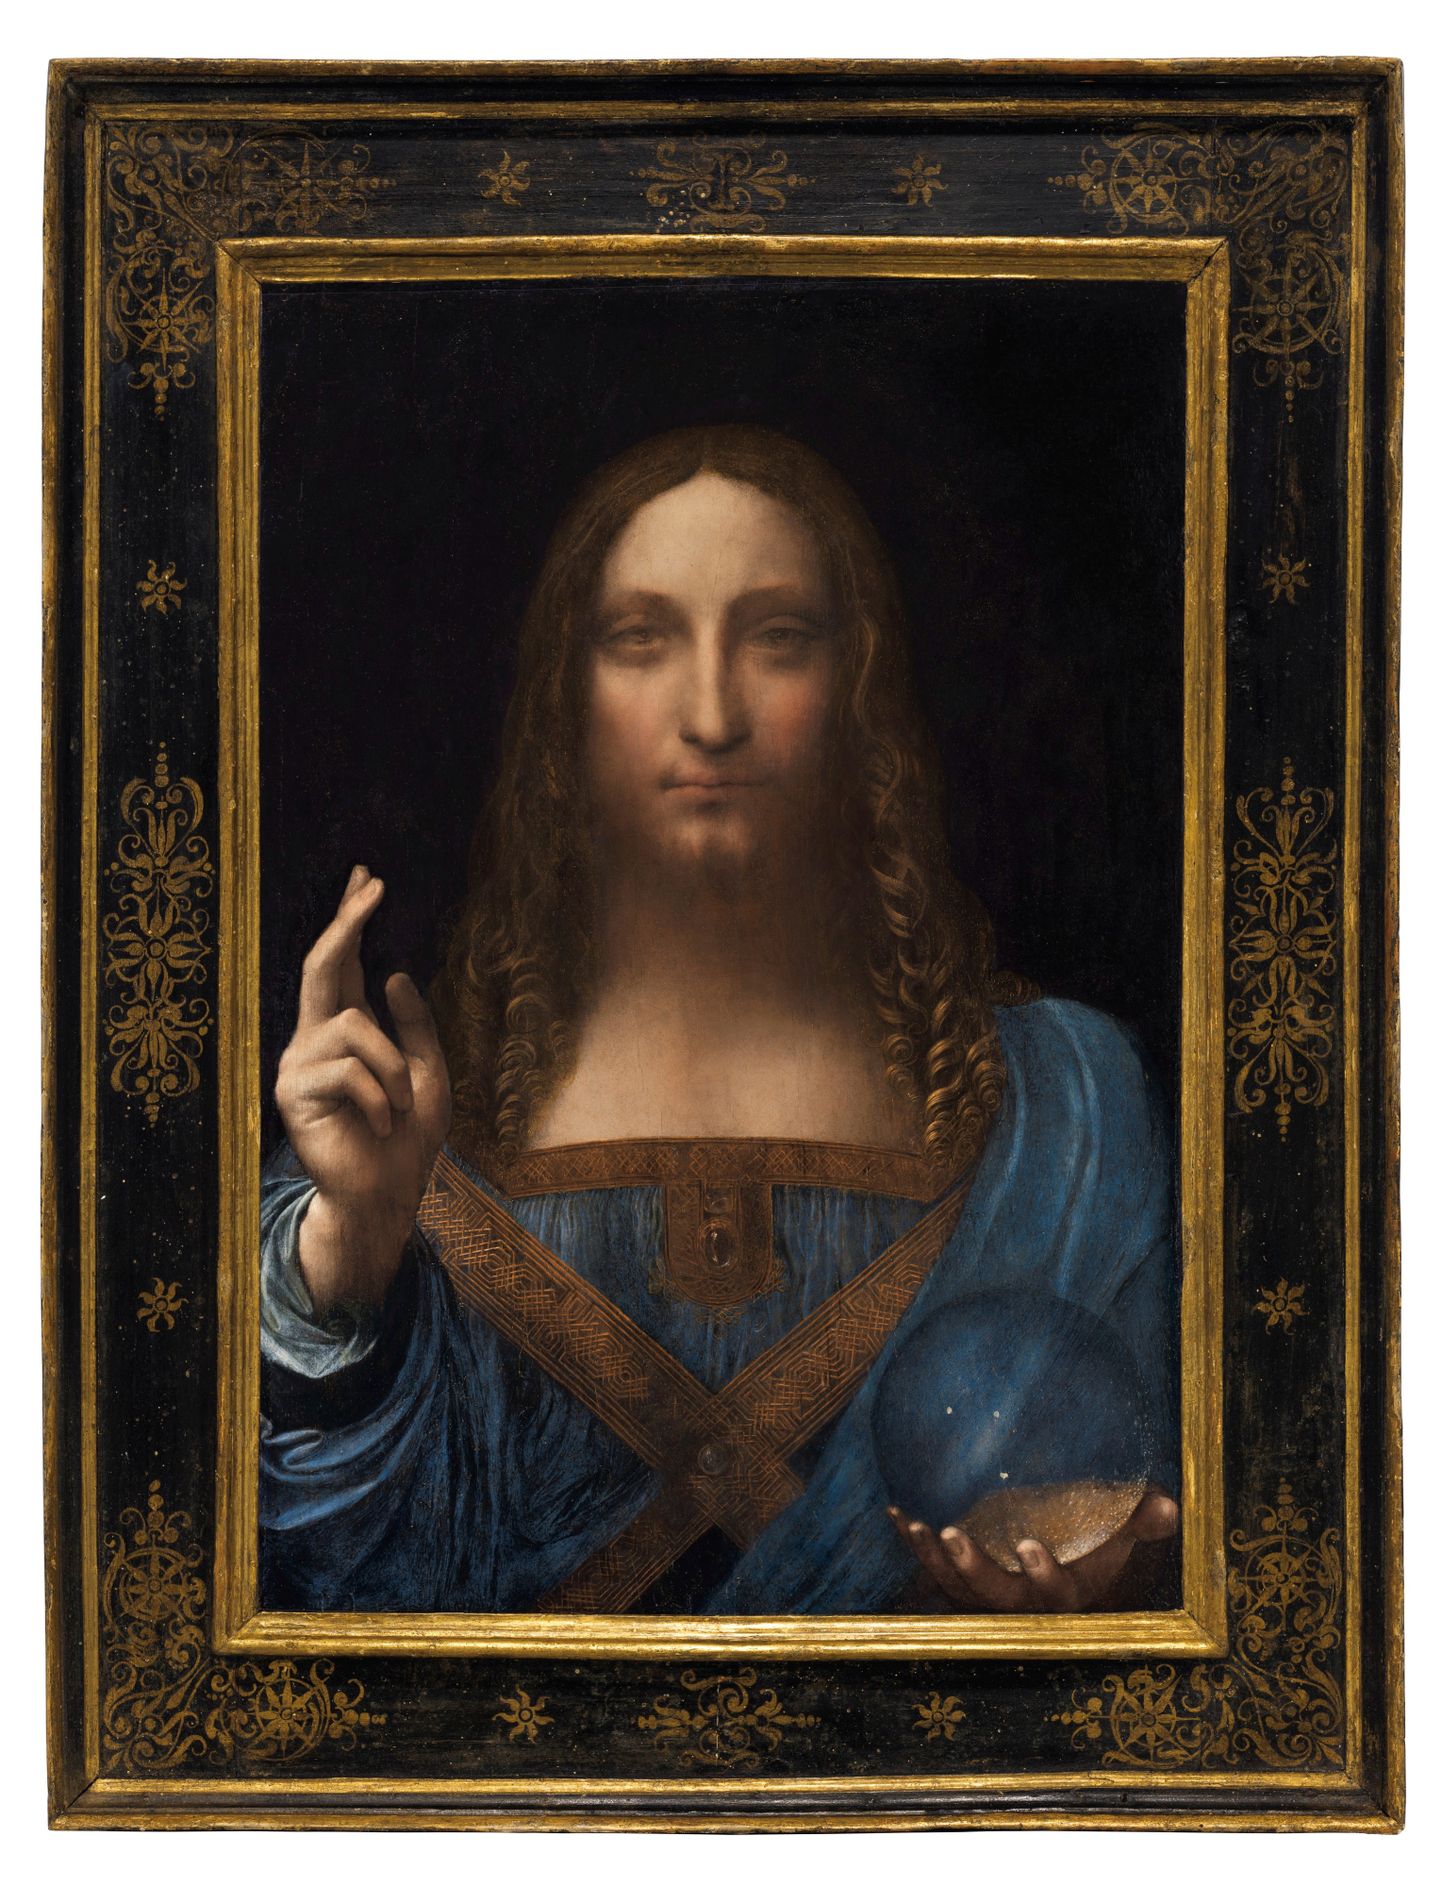 Leonardo da Vinci maal «Salvator Mundi» müüdi 2017 New Yorgis Christie oksjonimaja oksjinil 450 miljoni dollari eest